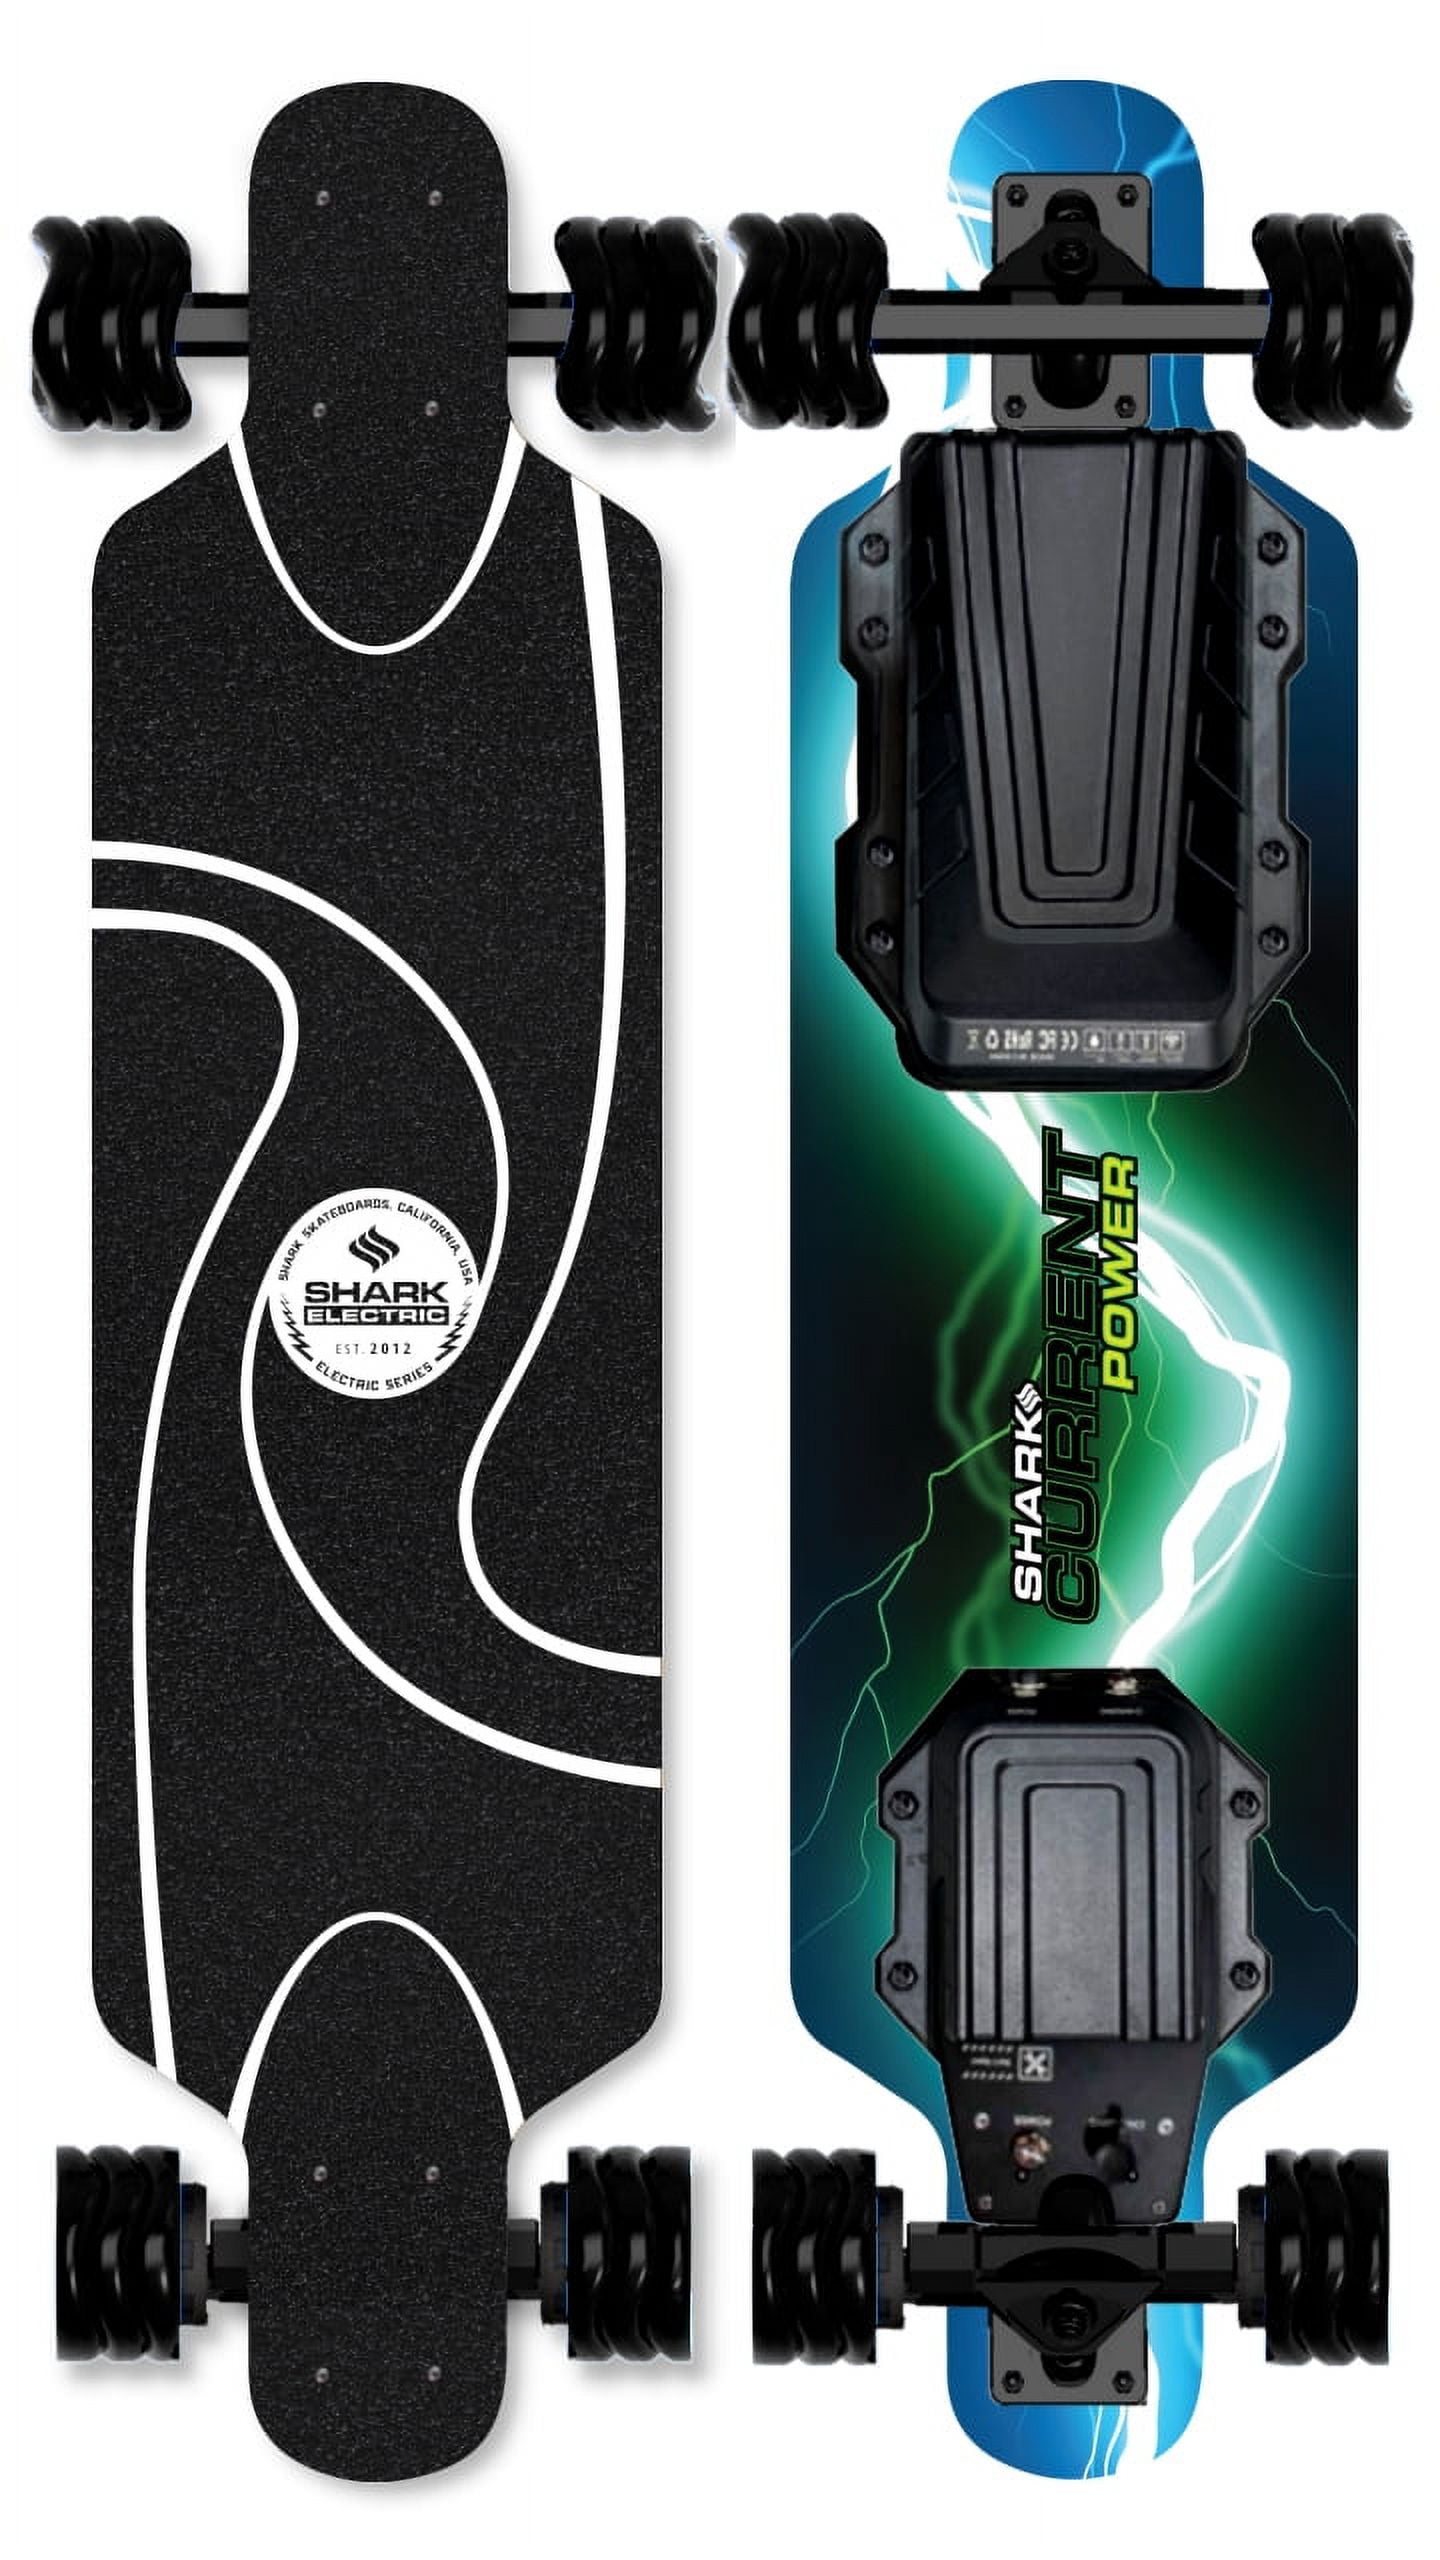 Shark Wheel Power Electric Skateboard All Terrain Longboard with